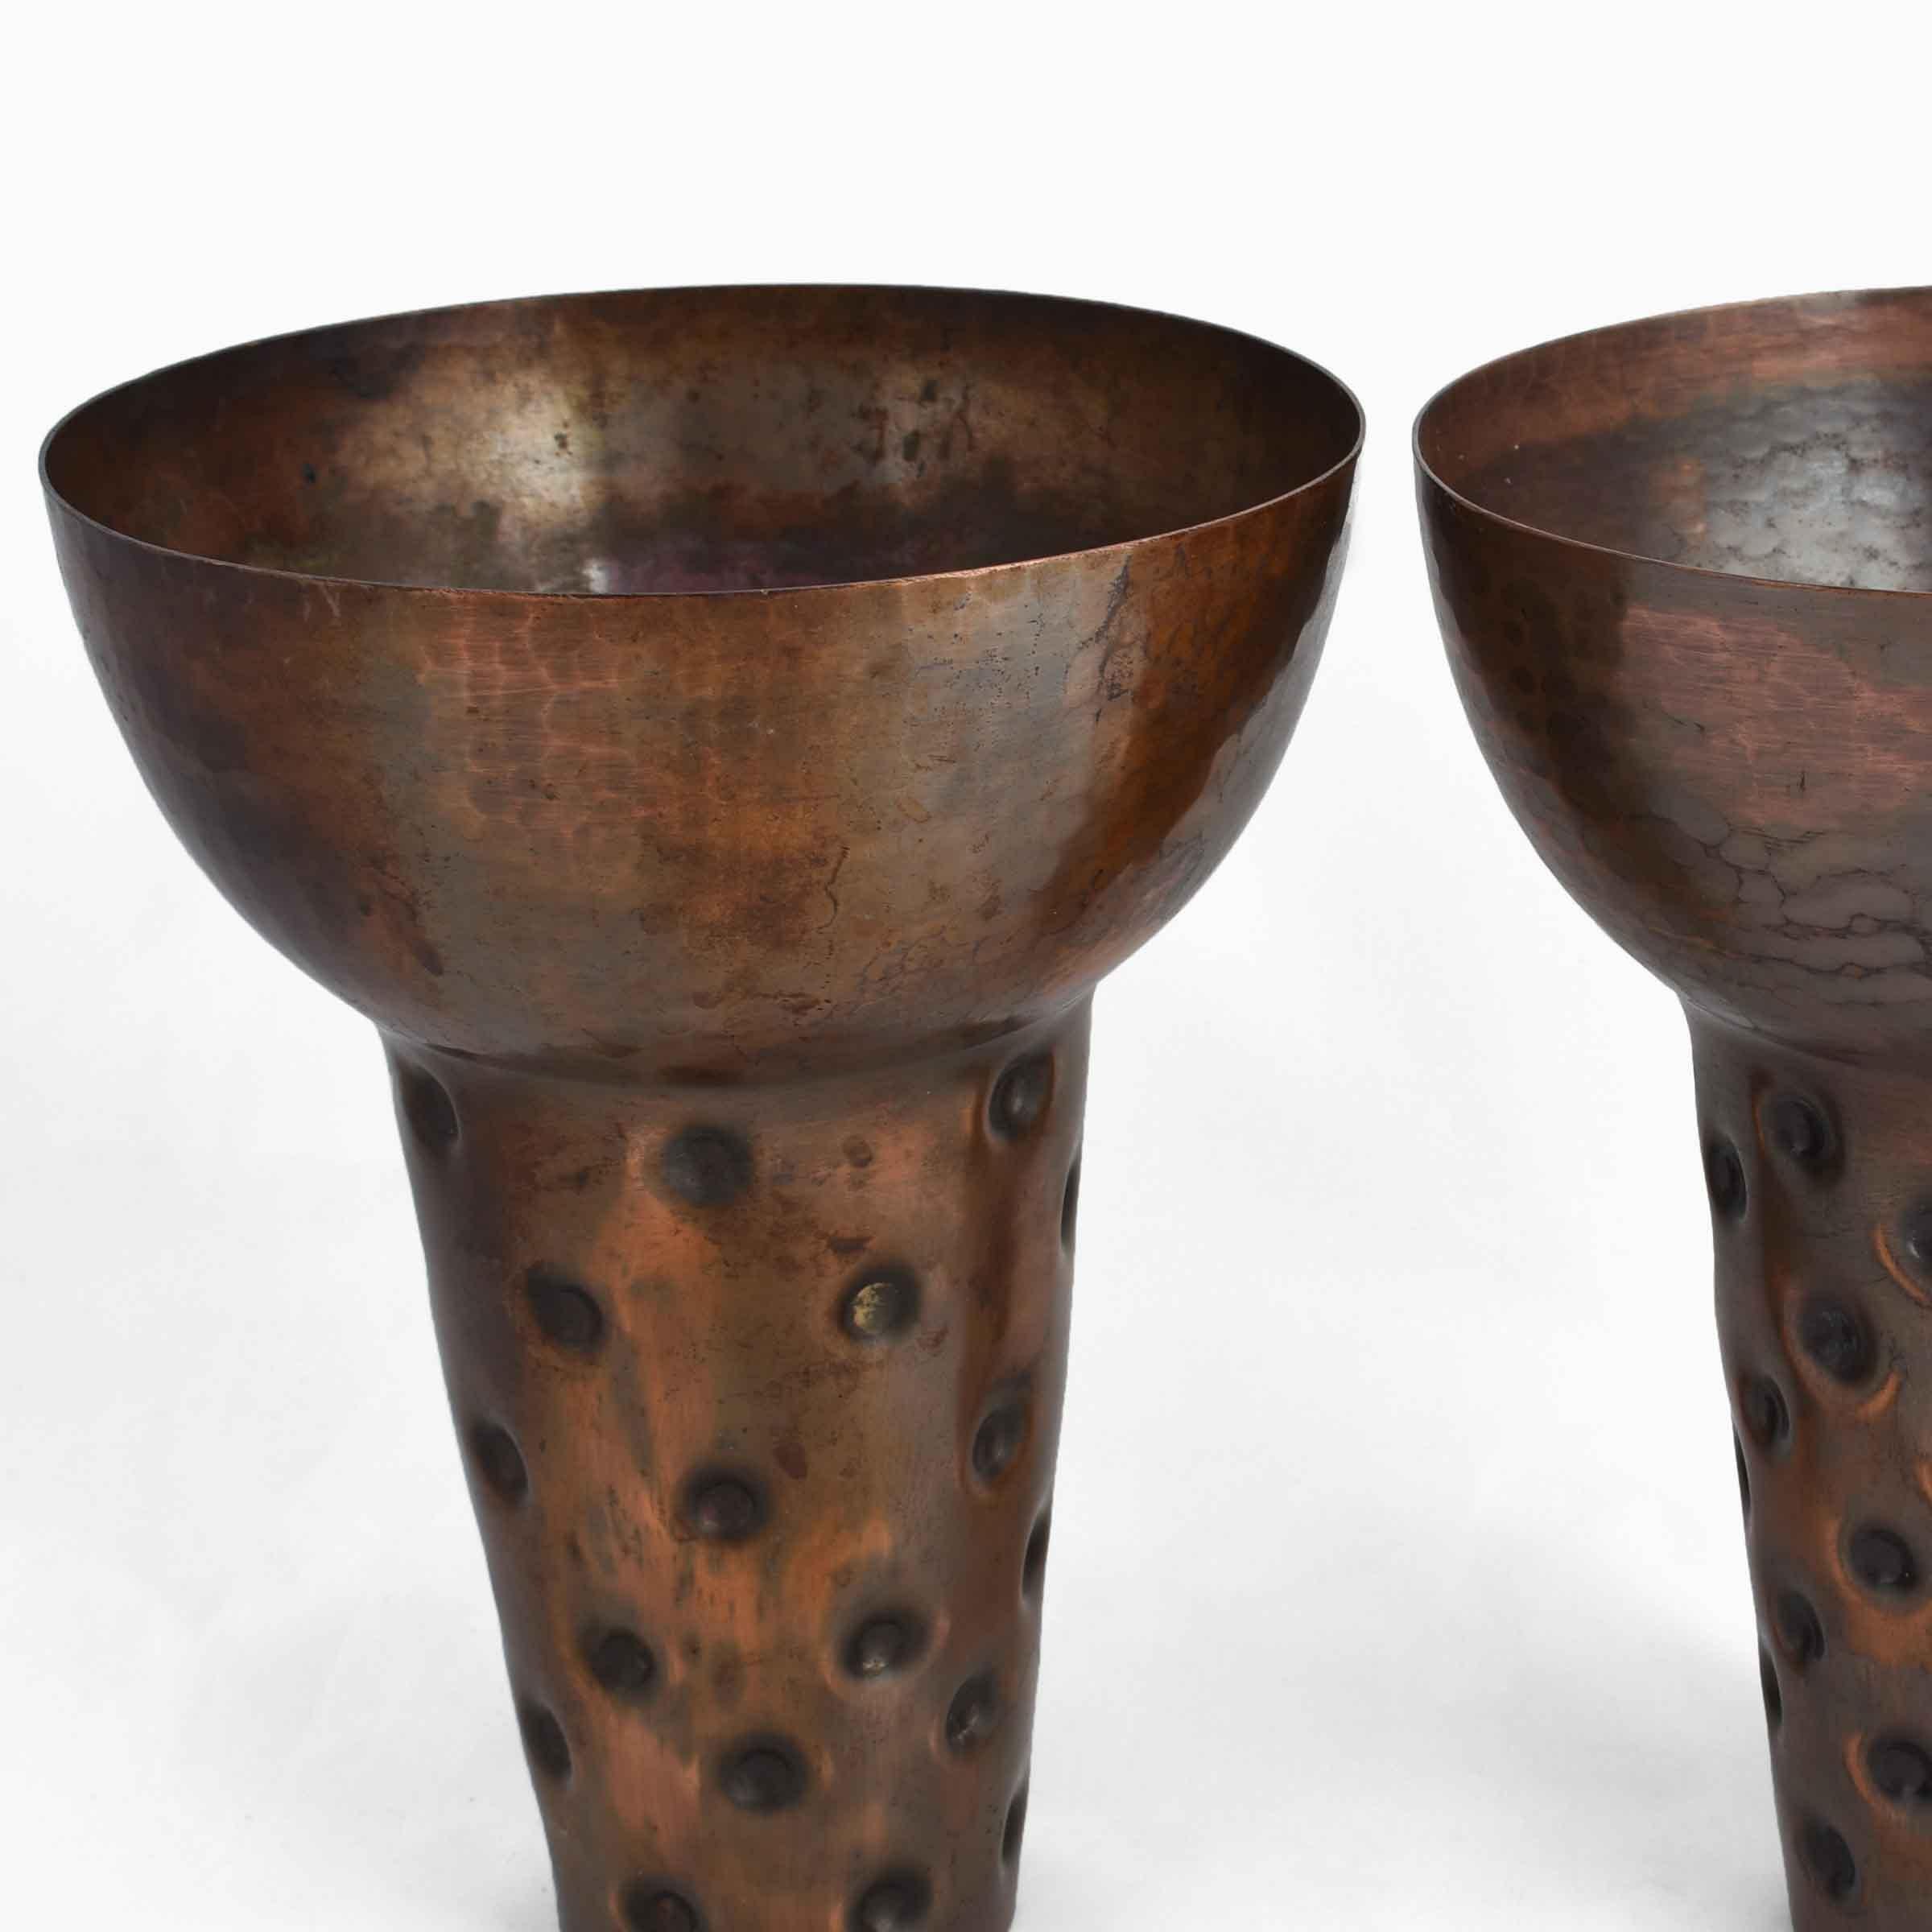 Paire de vases en cuivre vintage est un objet décoratif original réalisé en Allemagne, vers les années 1950.

Des objets en cuivre incarnés.

Créé par Eugen Zint. 

